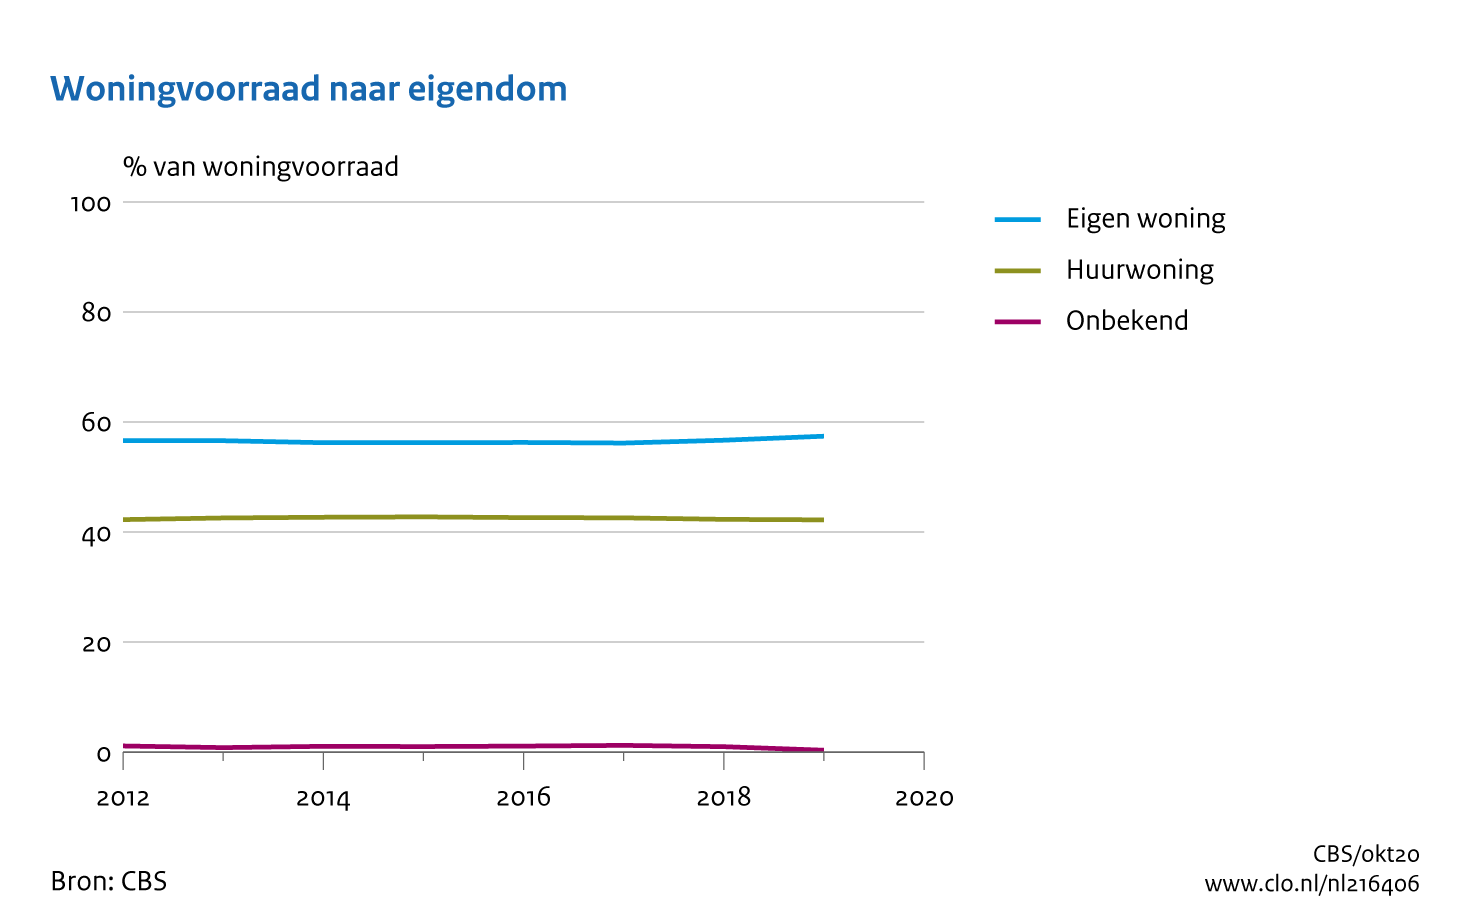 Figuur Woningvoorraad naar eigendom, 2012-2019. In de rest van de tekst wordt deze figuur uitgebreider uitgelegd.